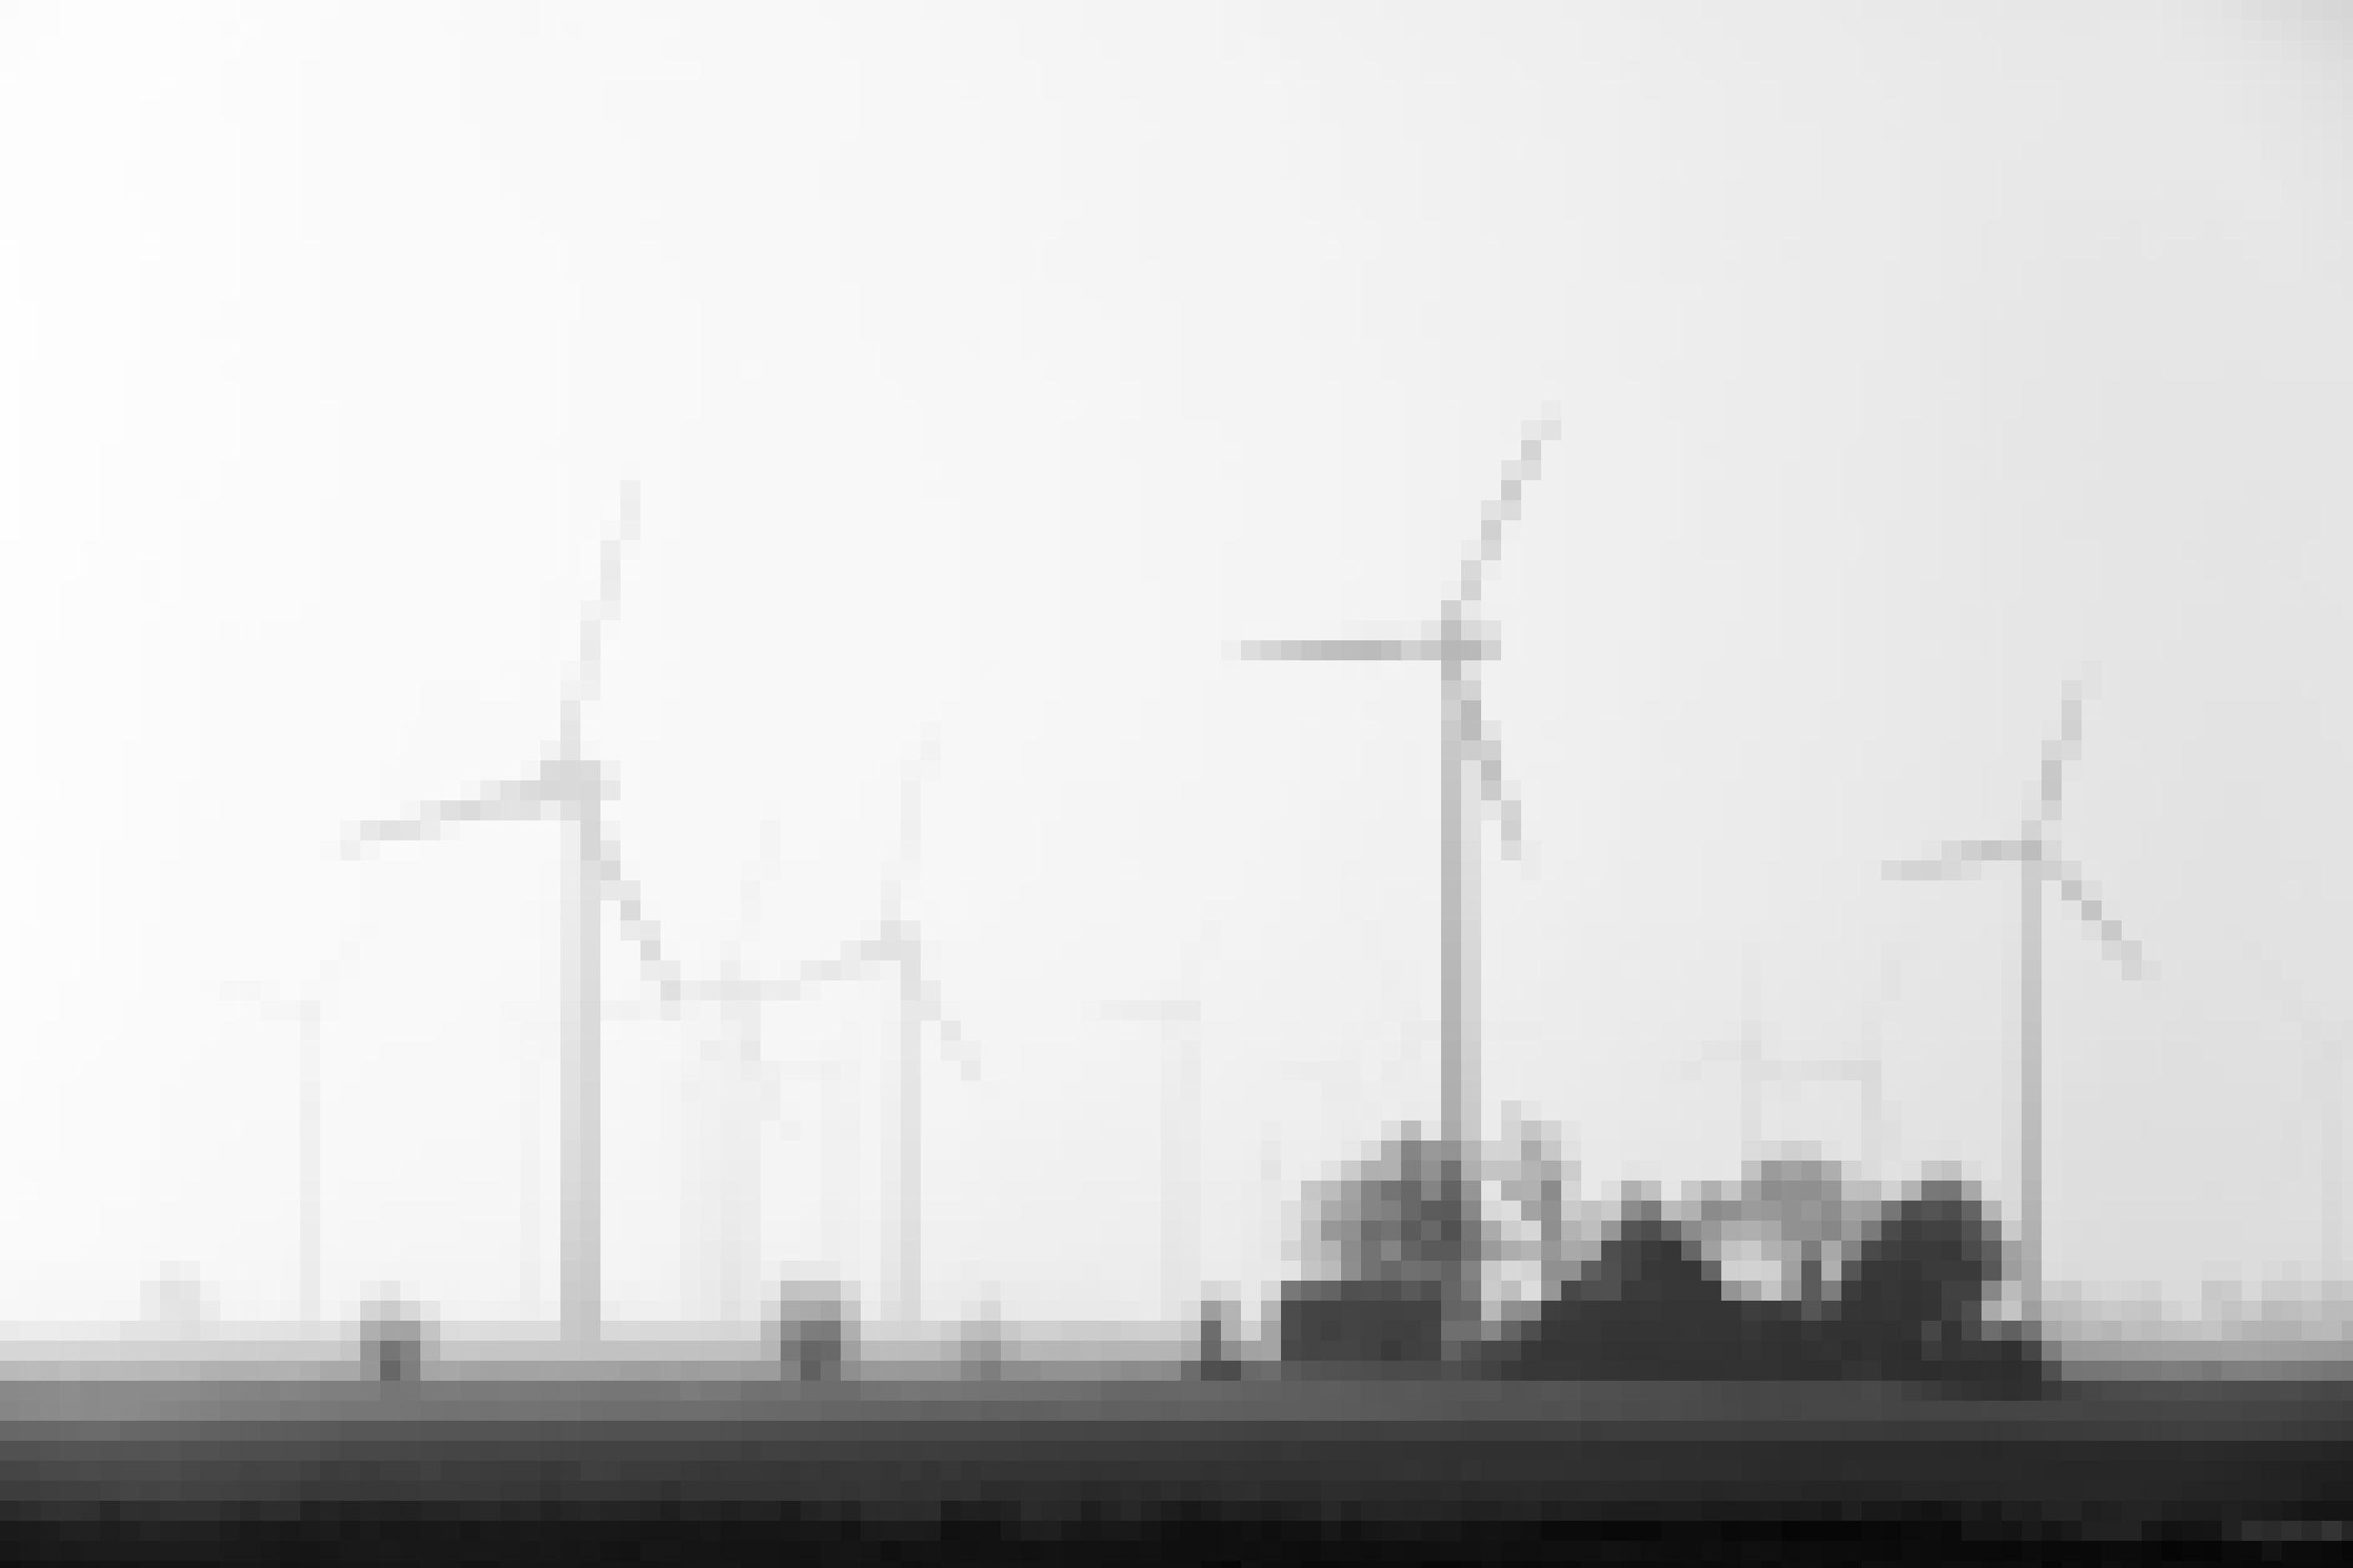 Eine Gruppe von Windenergieanlagen in der flachen norddeutschen Landschaft, im Vordergrund reetgedeckte Bauernhäuser.